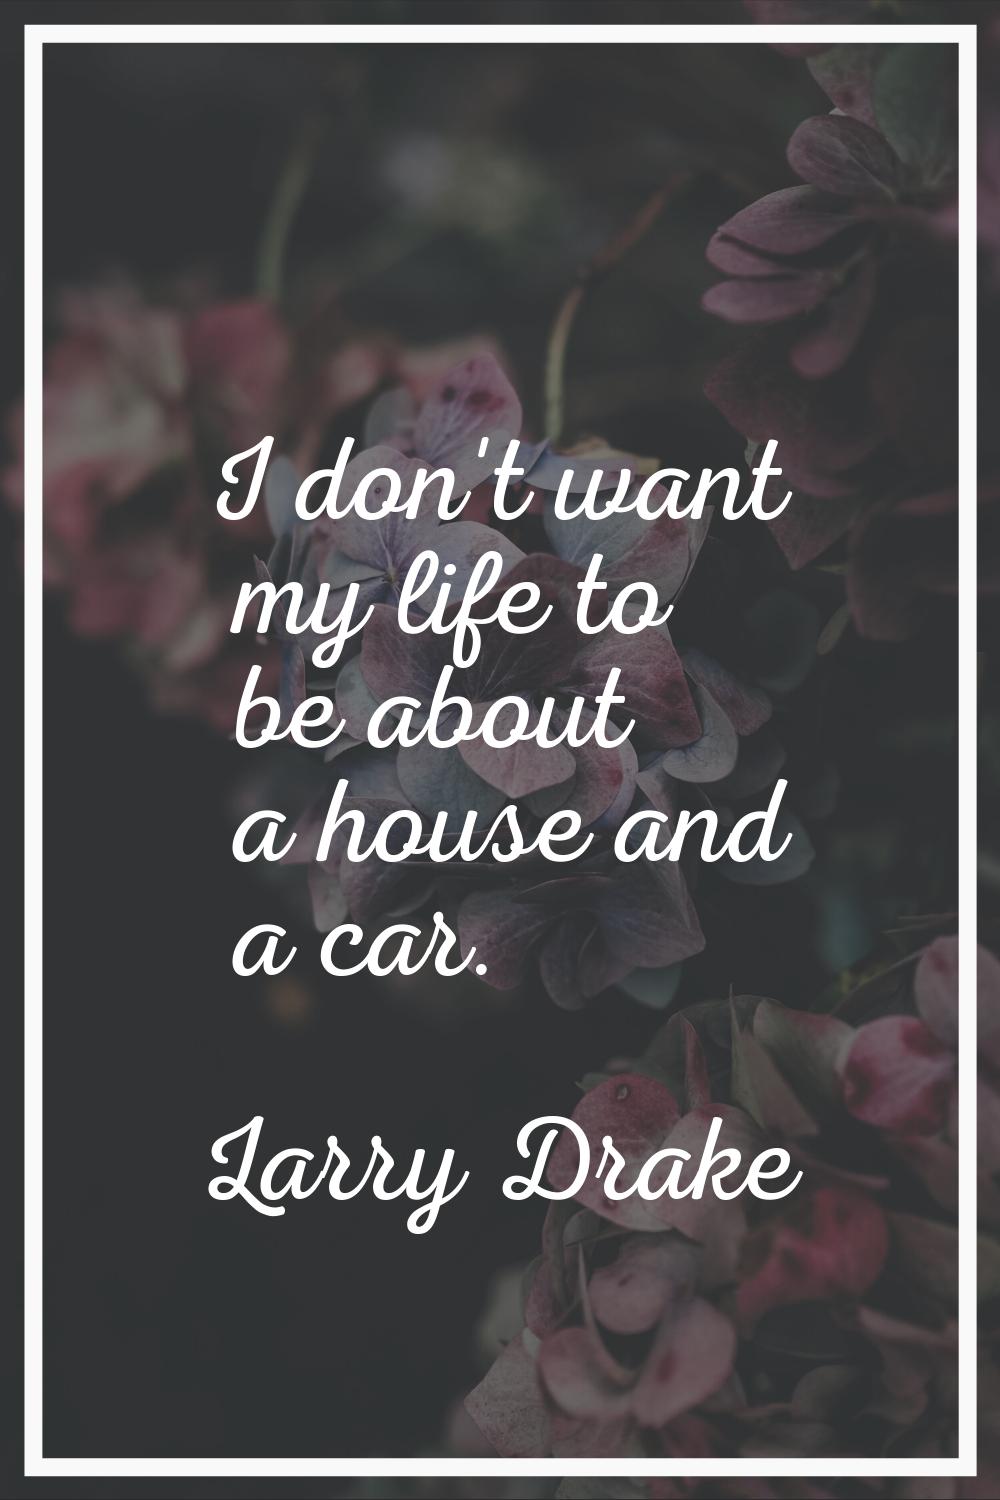 I don't want my life to be about a house and a car.